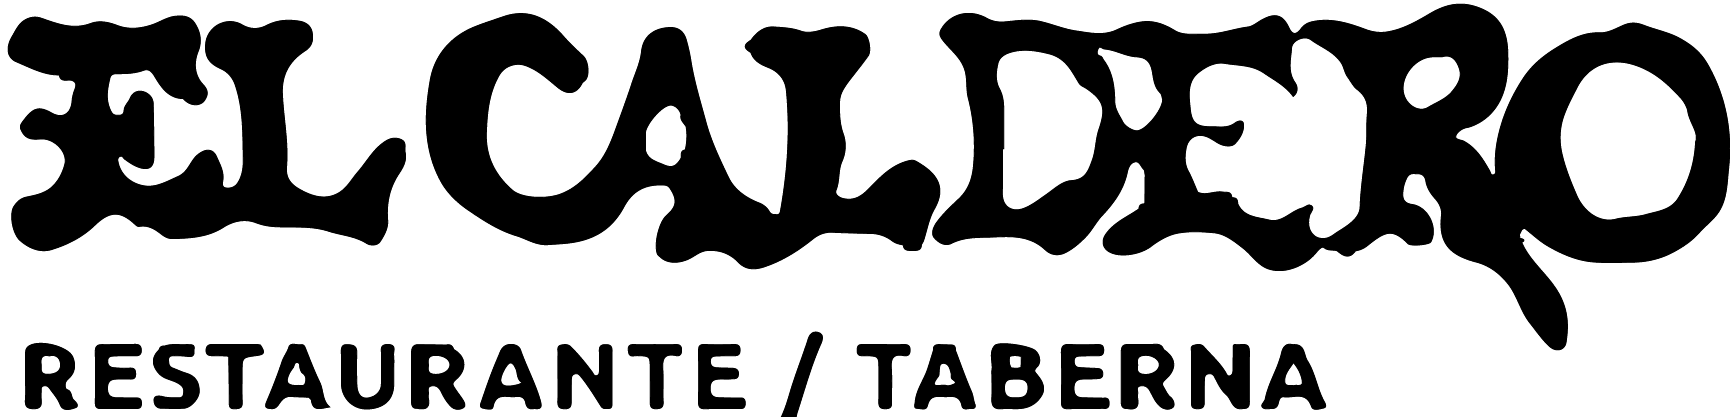 Logo El Caldero - Cliente Auditecnic